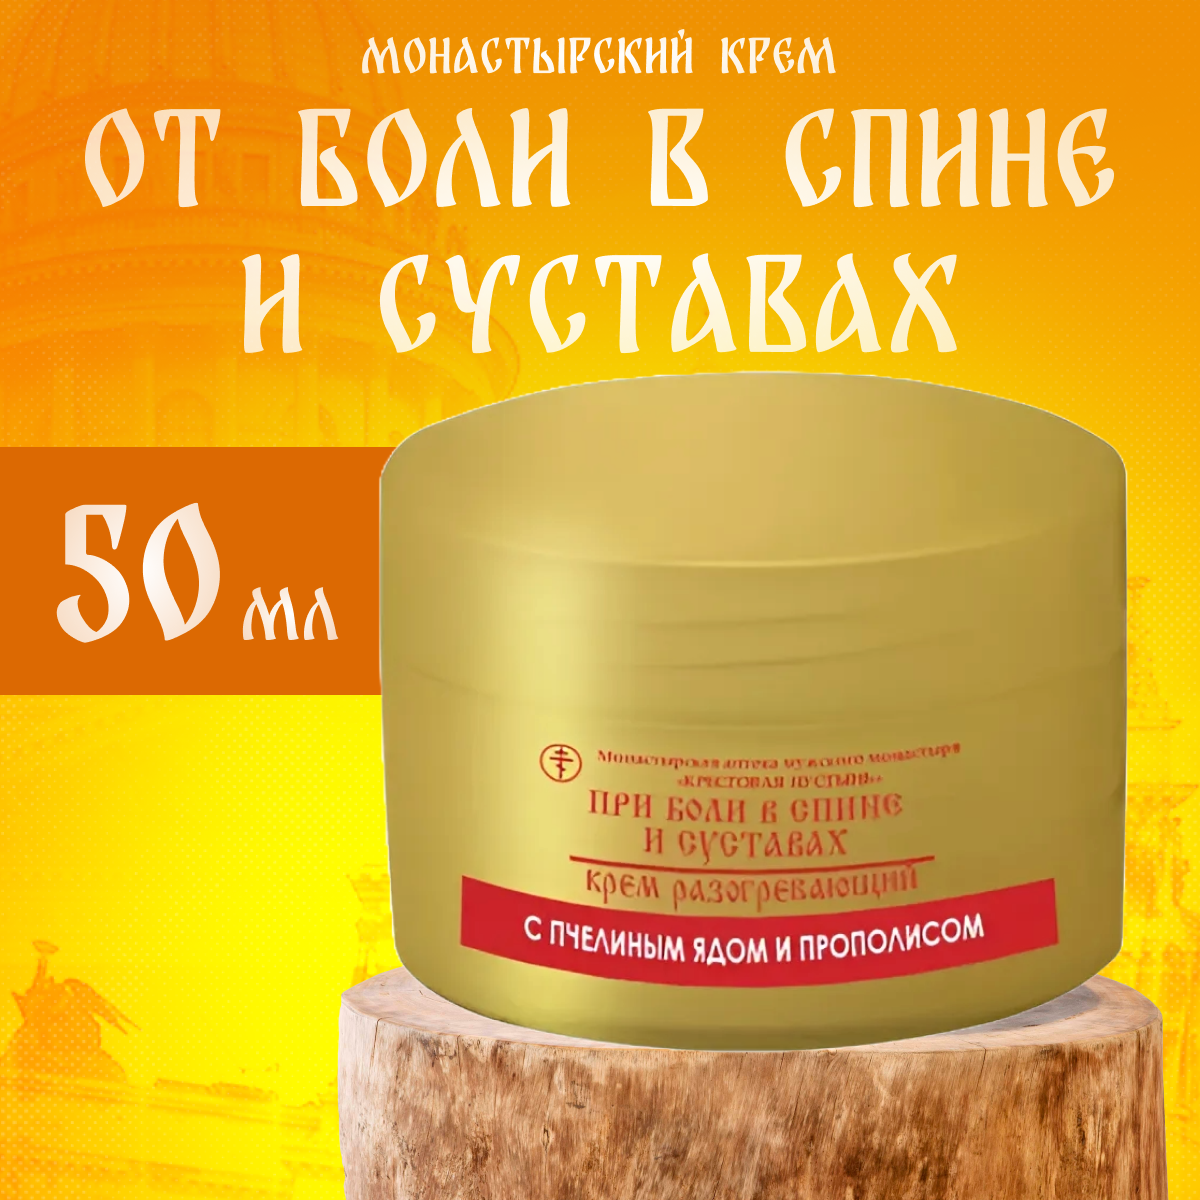 Крем Бизорюк при боли в спине и суставах, с пчелиным ядом, Солох-Аул, пластик, 50 мл.